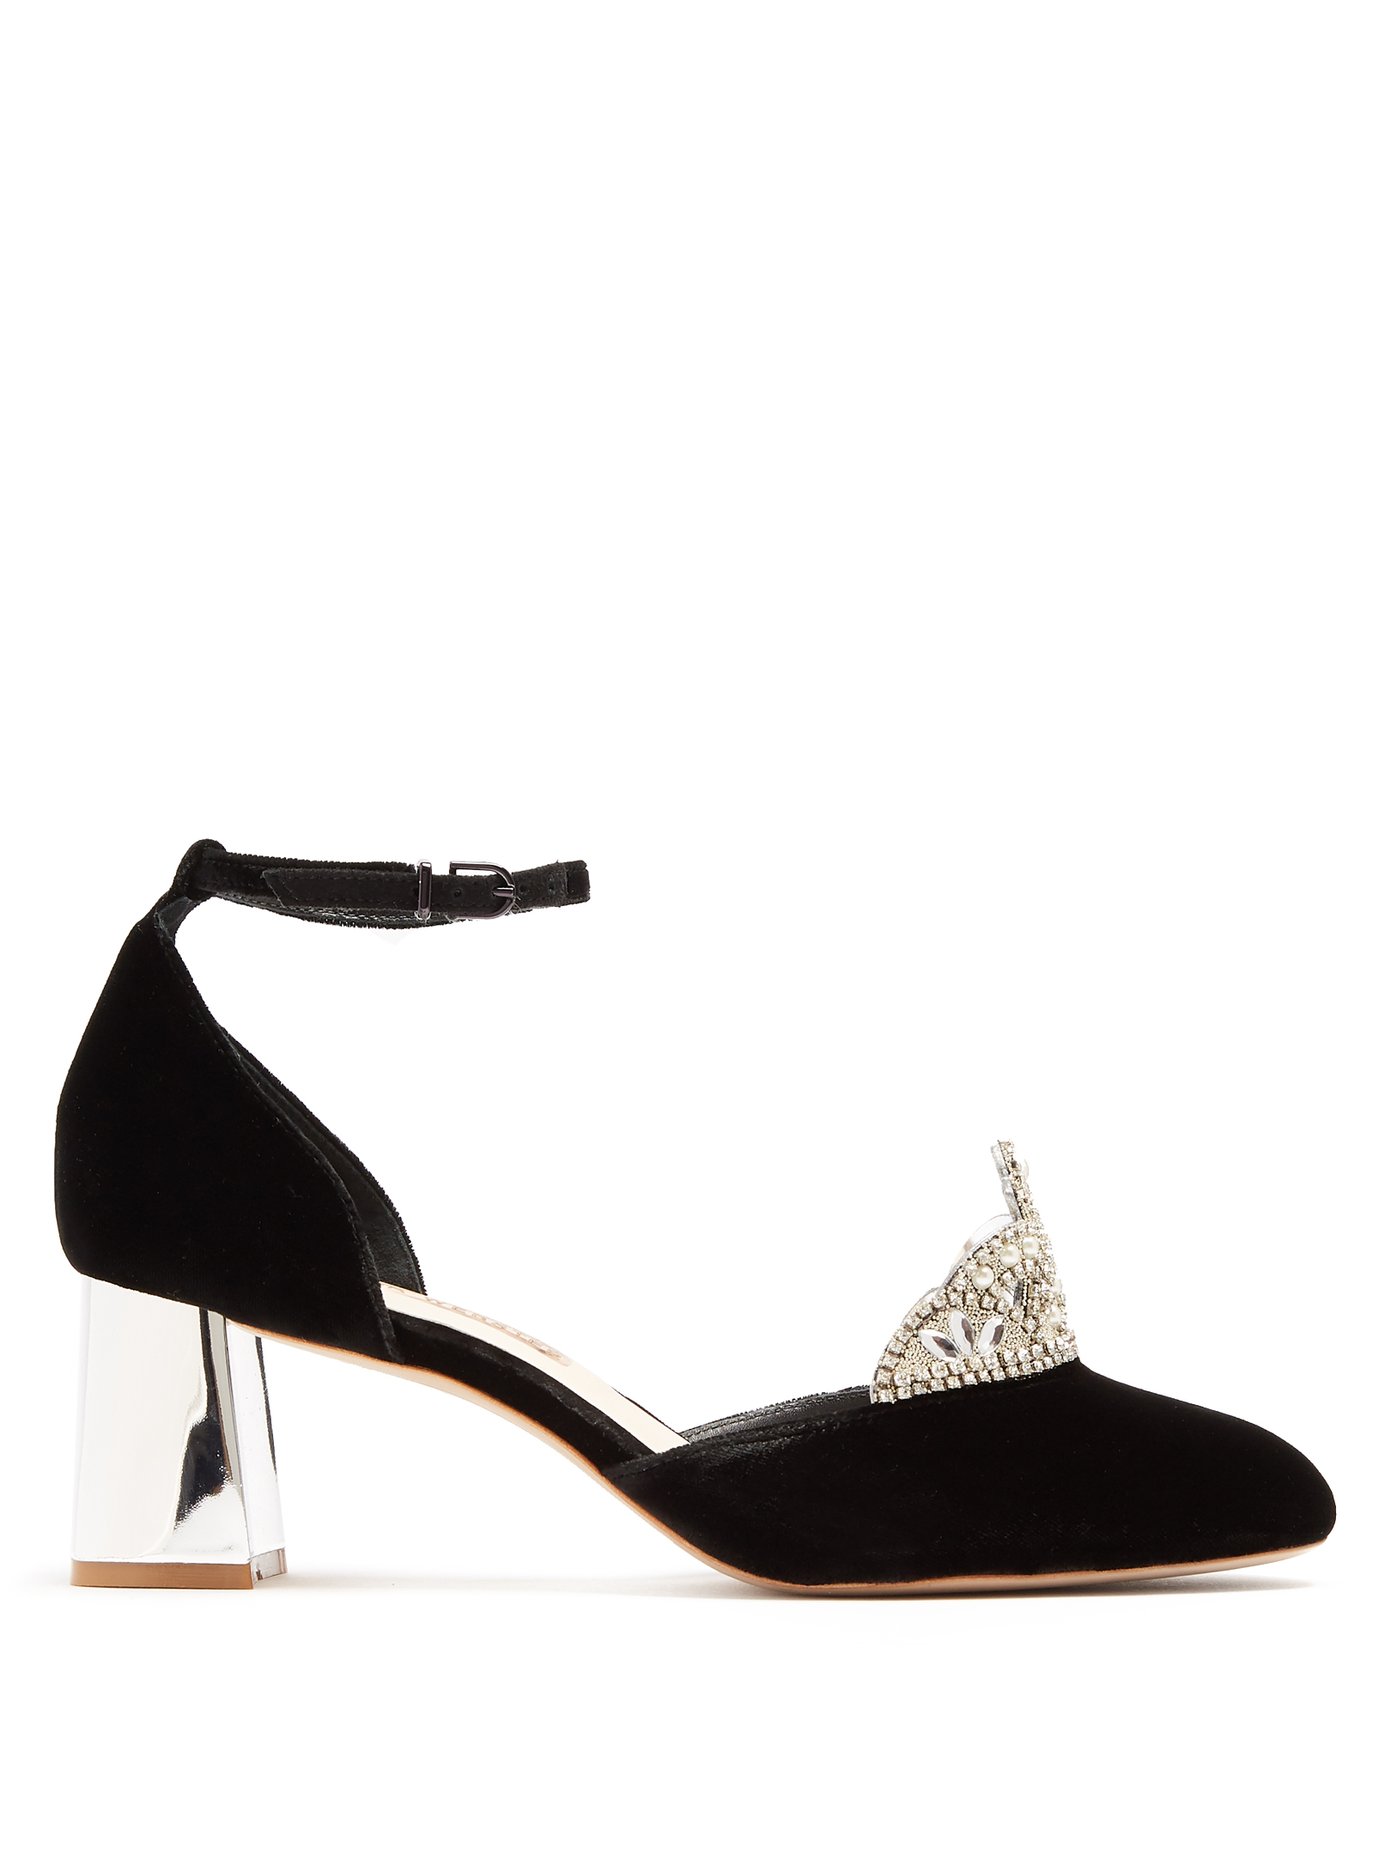 sophia webster royalty heels